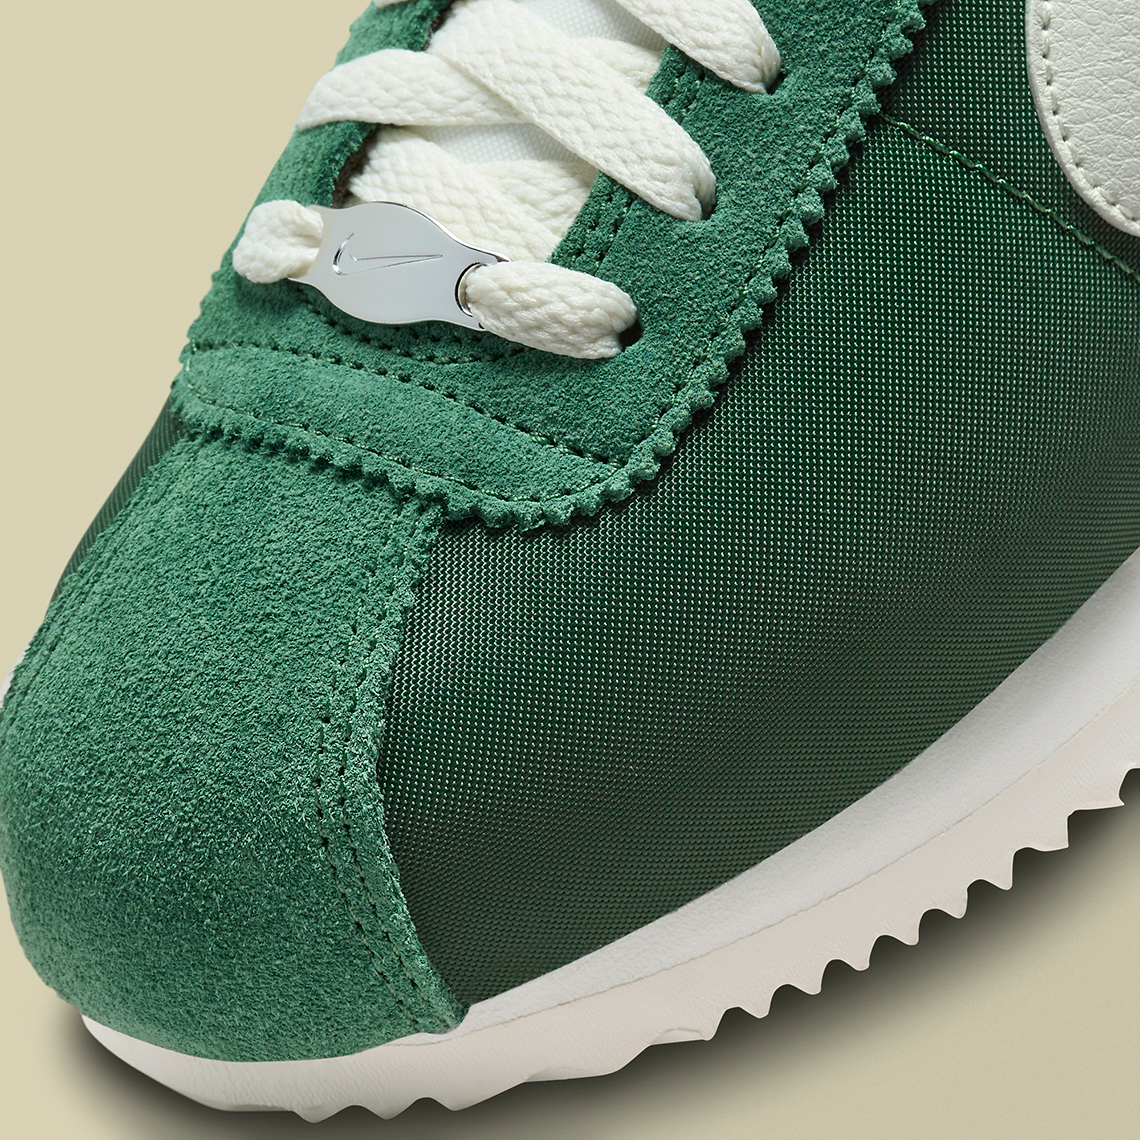 Nike Cortez Womens Fir Green Dz2795 300 7